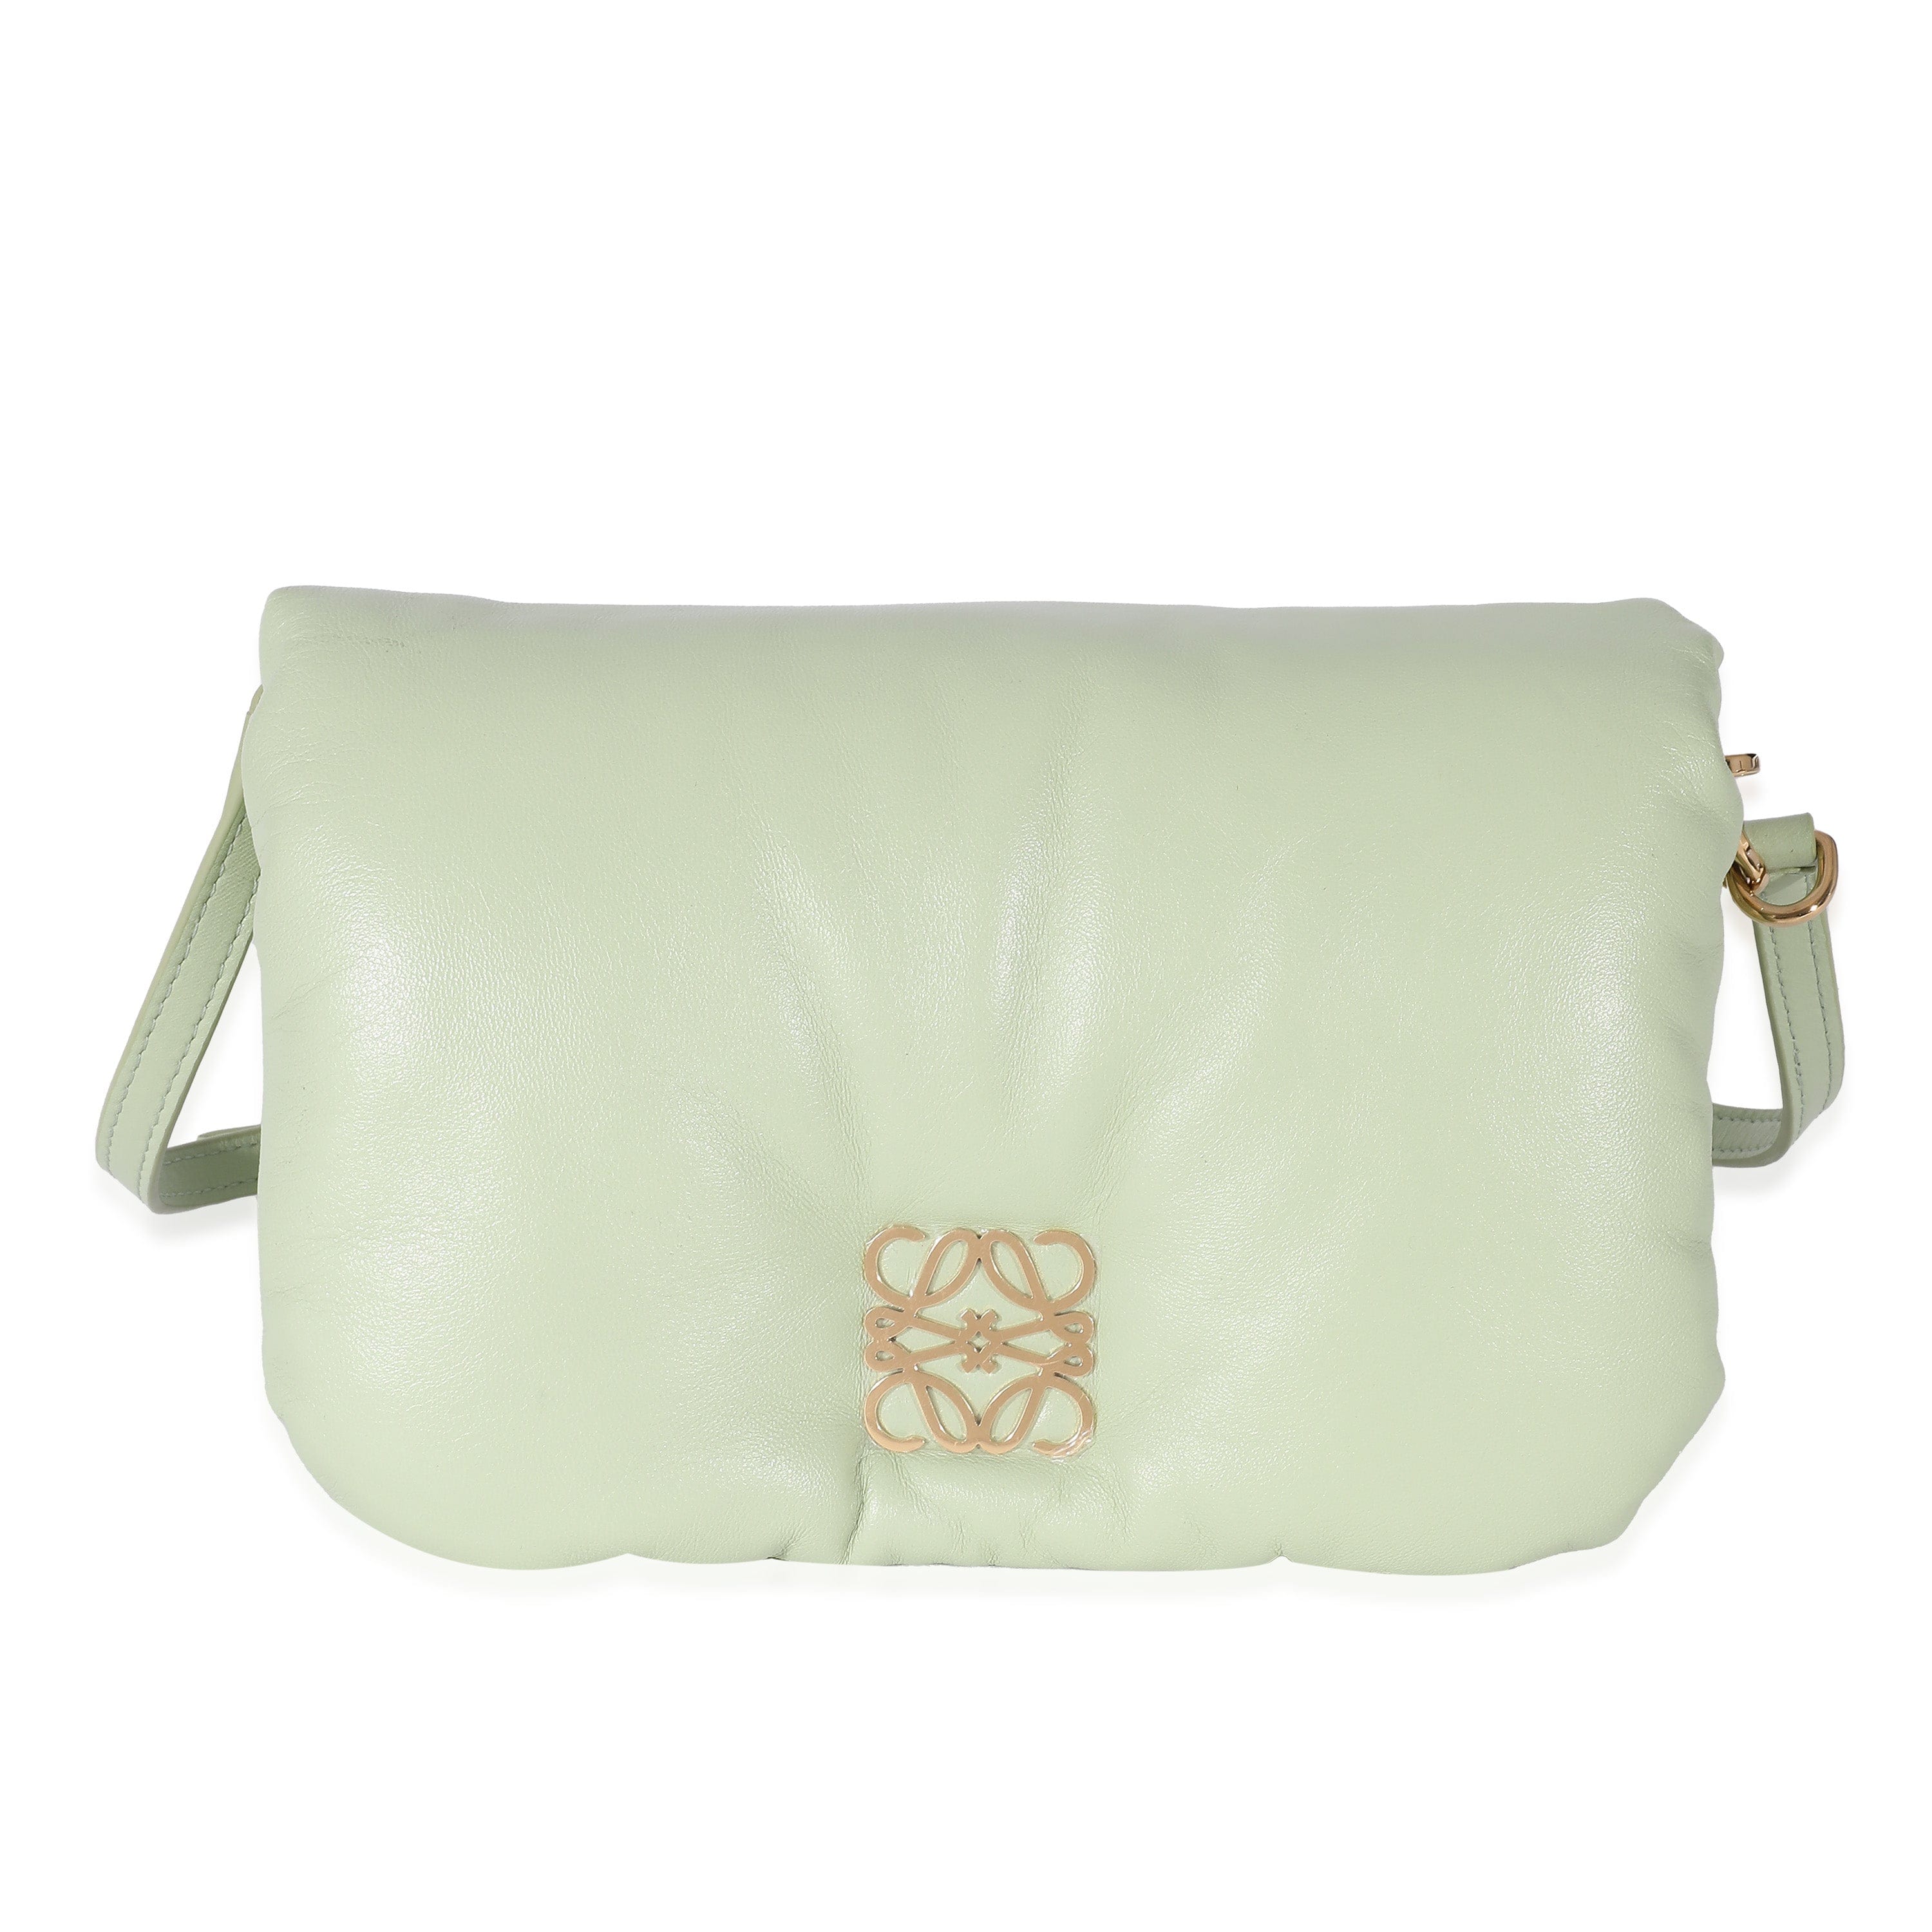 Loewe Loewe Shiny Nappa Lambskin Pale Green Mini Puffer Goya Bag